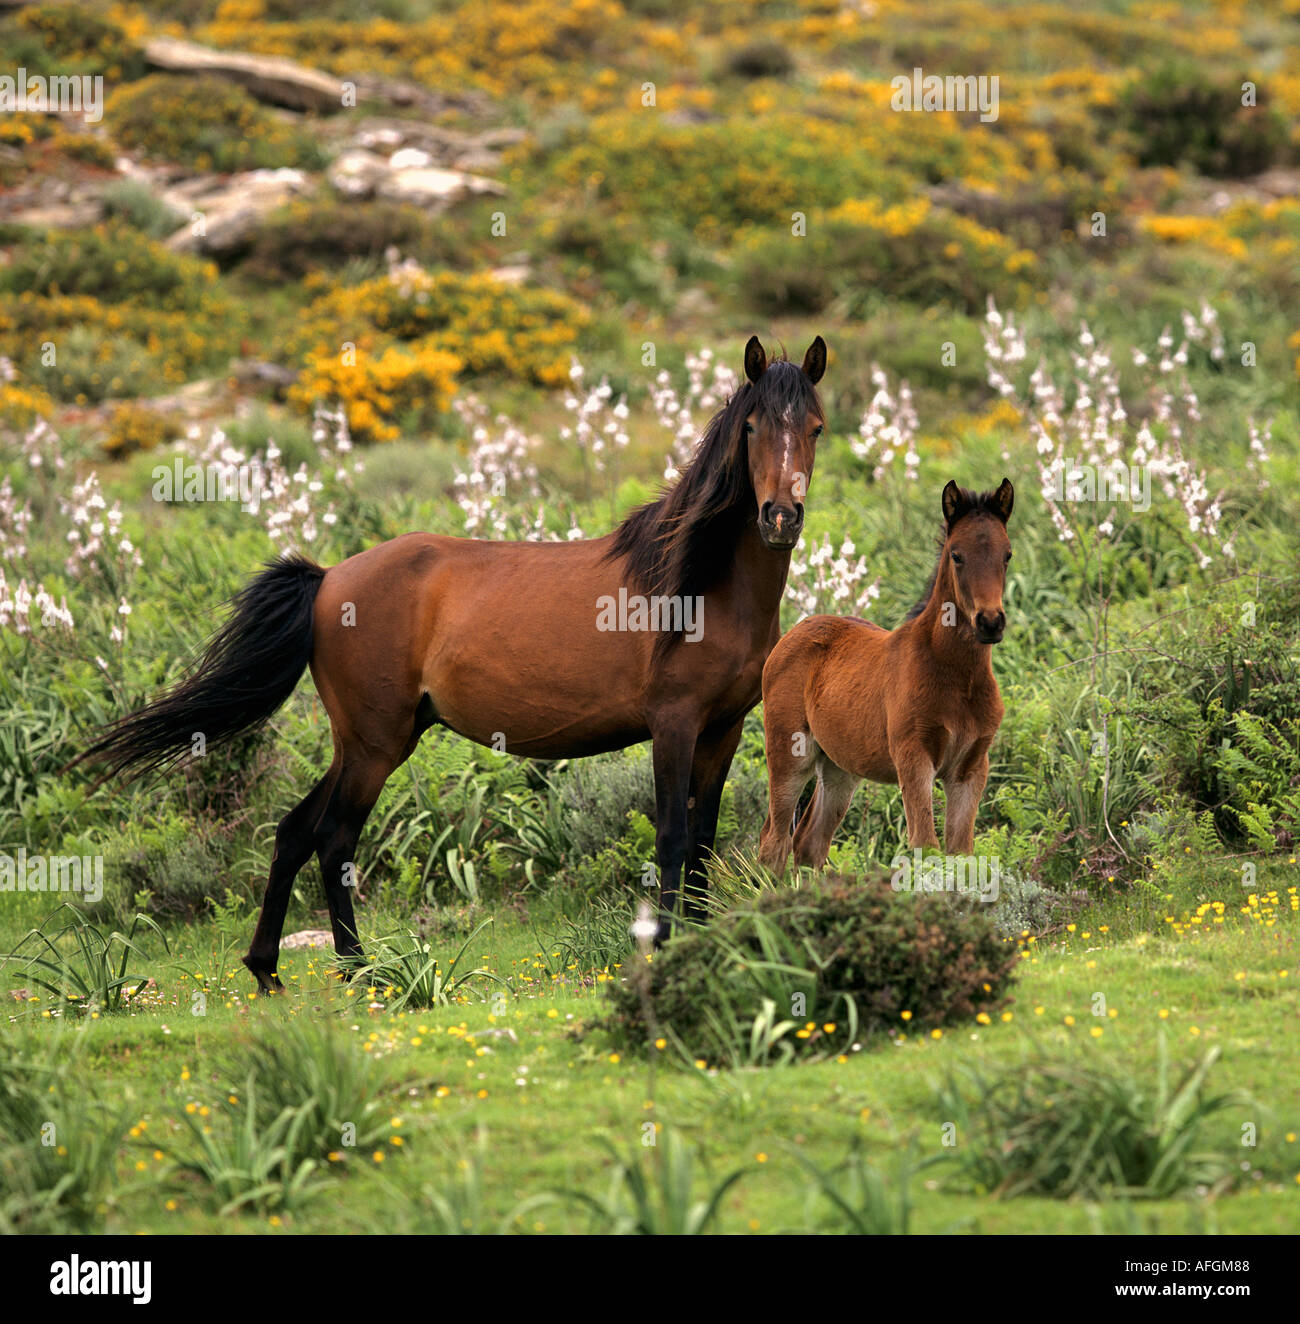 Arabo-Sardo-Horse - mare with foal Stock Photo